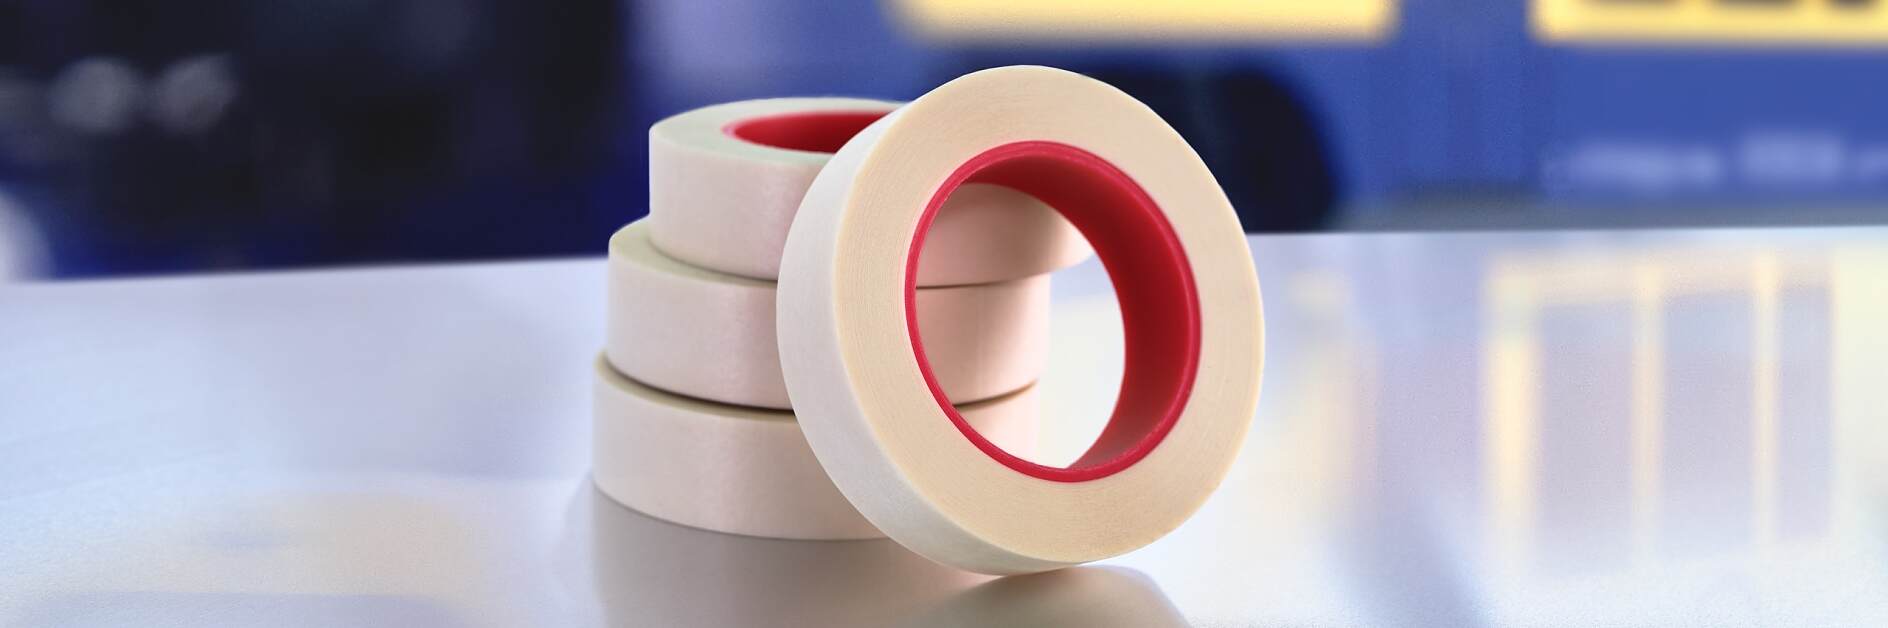 tesa-4831-silicone-free-masking-tape